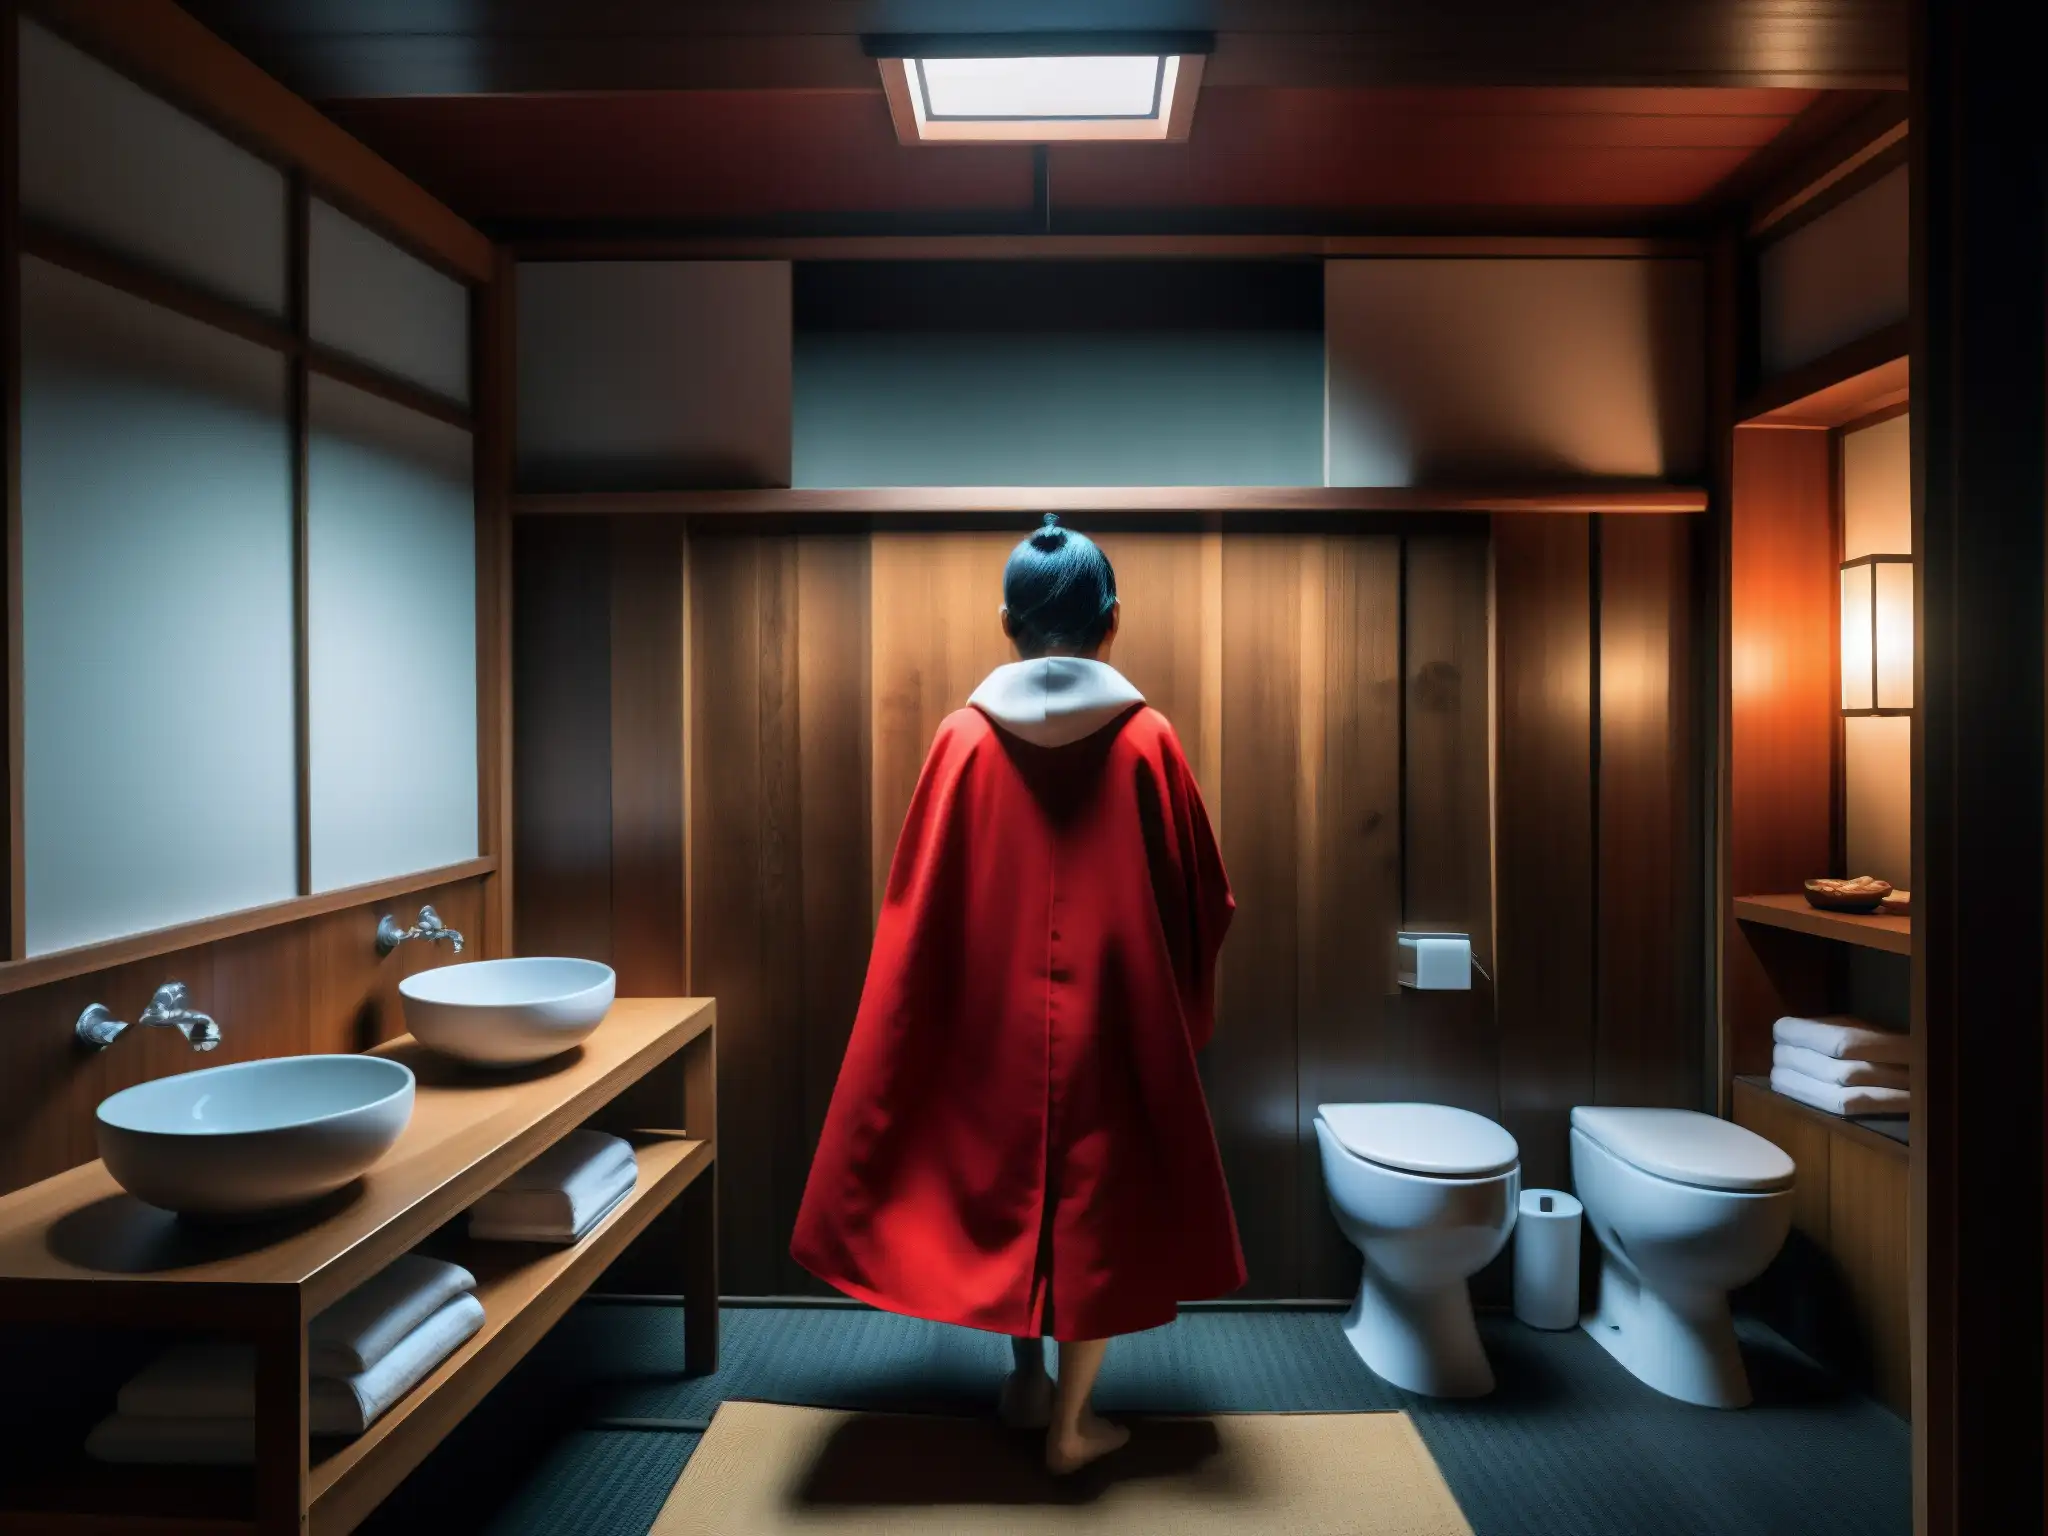 Escena inquietante en baño japonés con figura en capa roja y máscara Noh